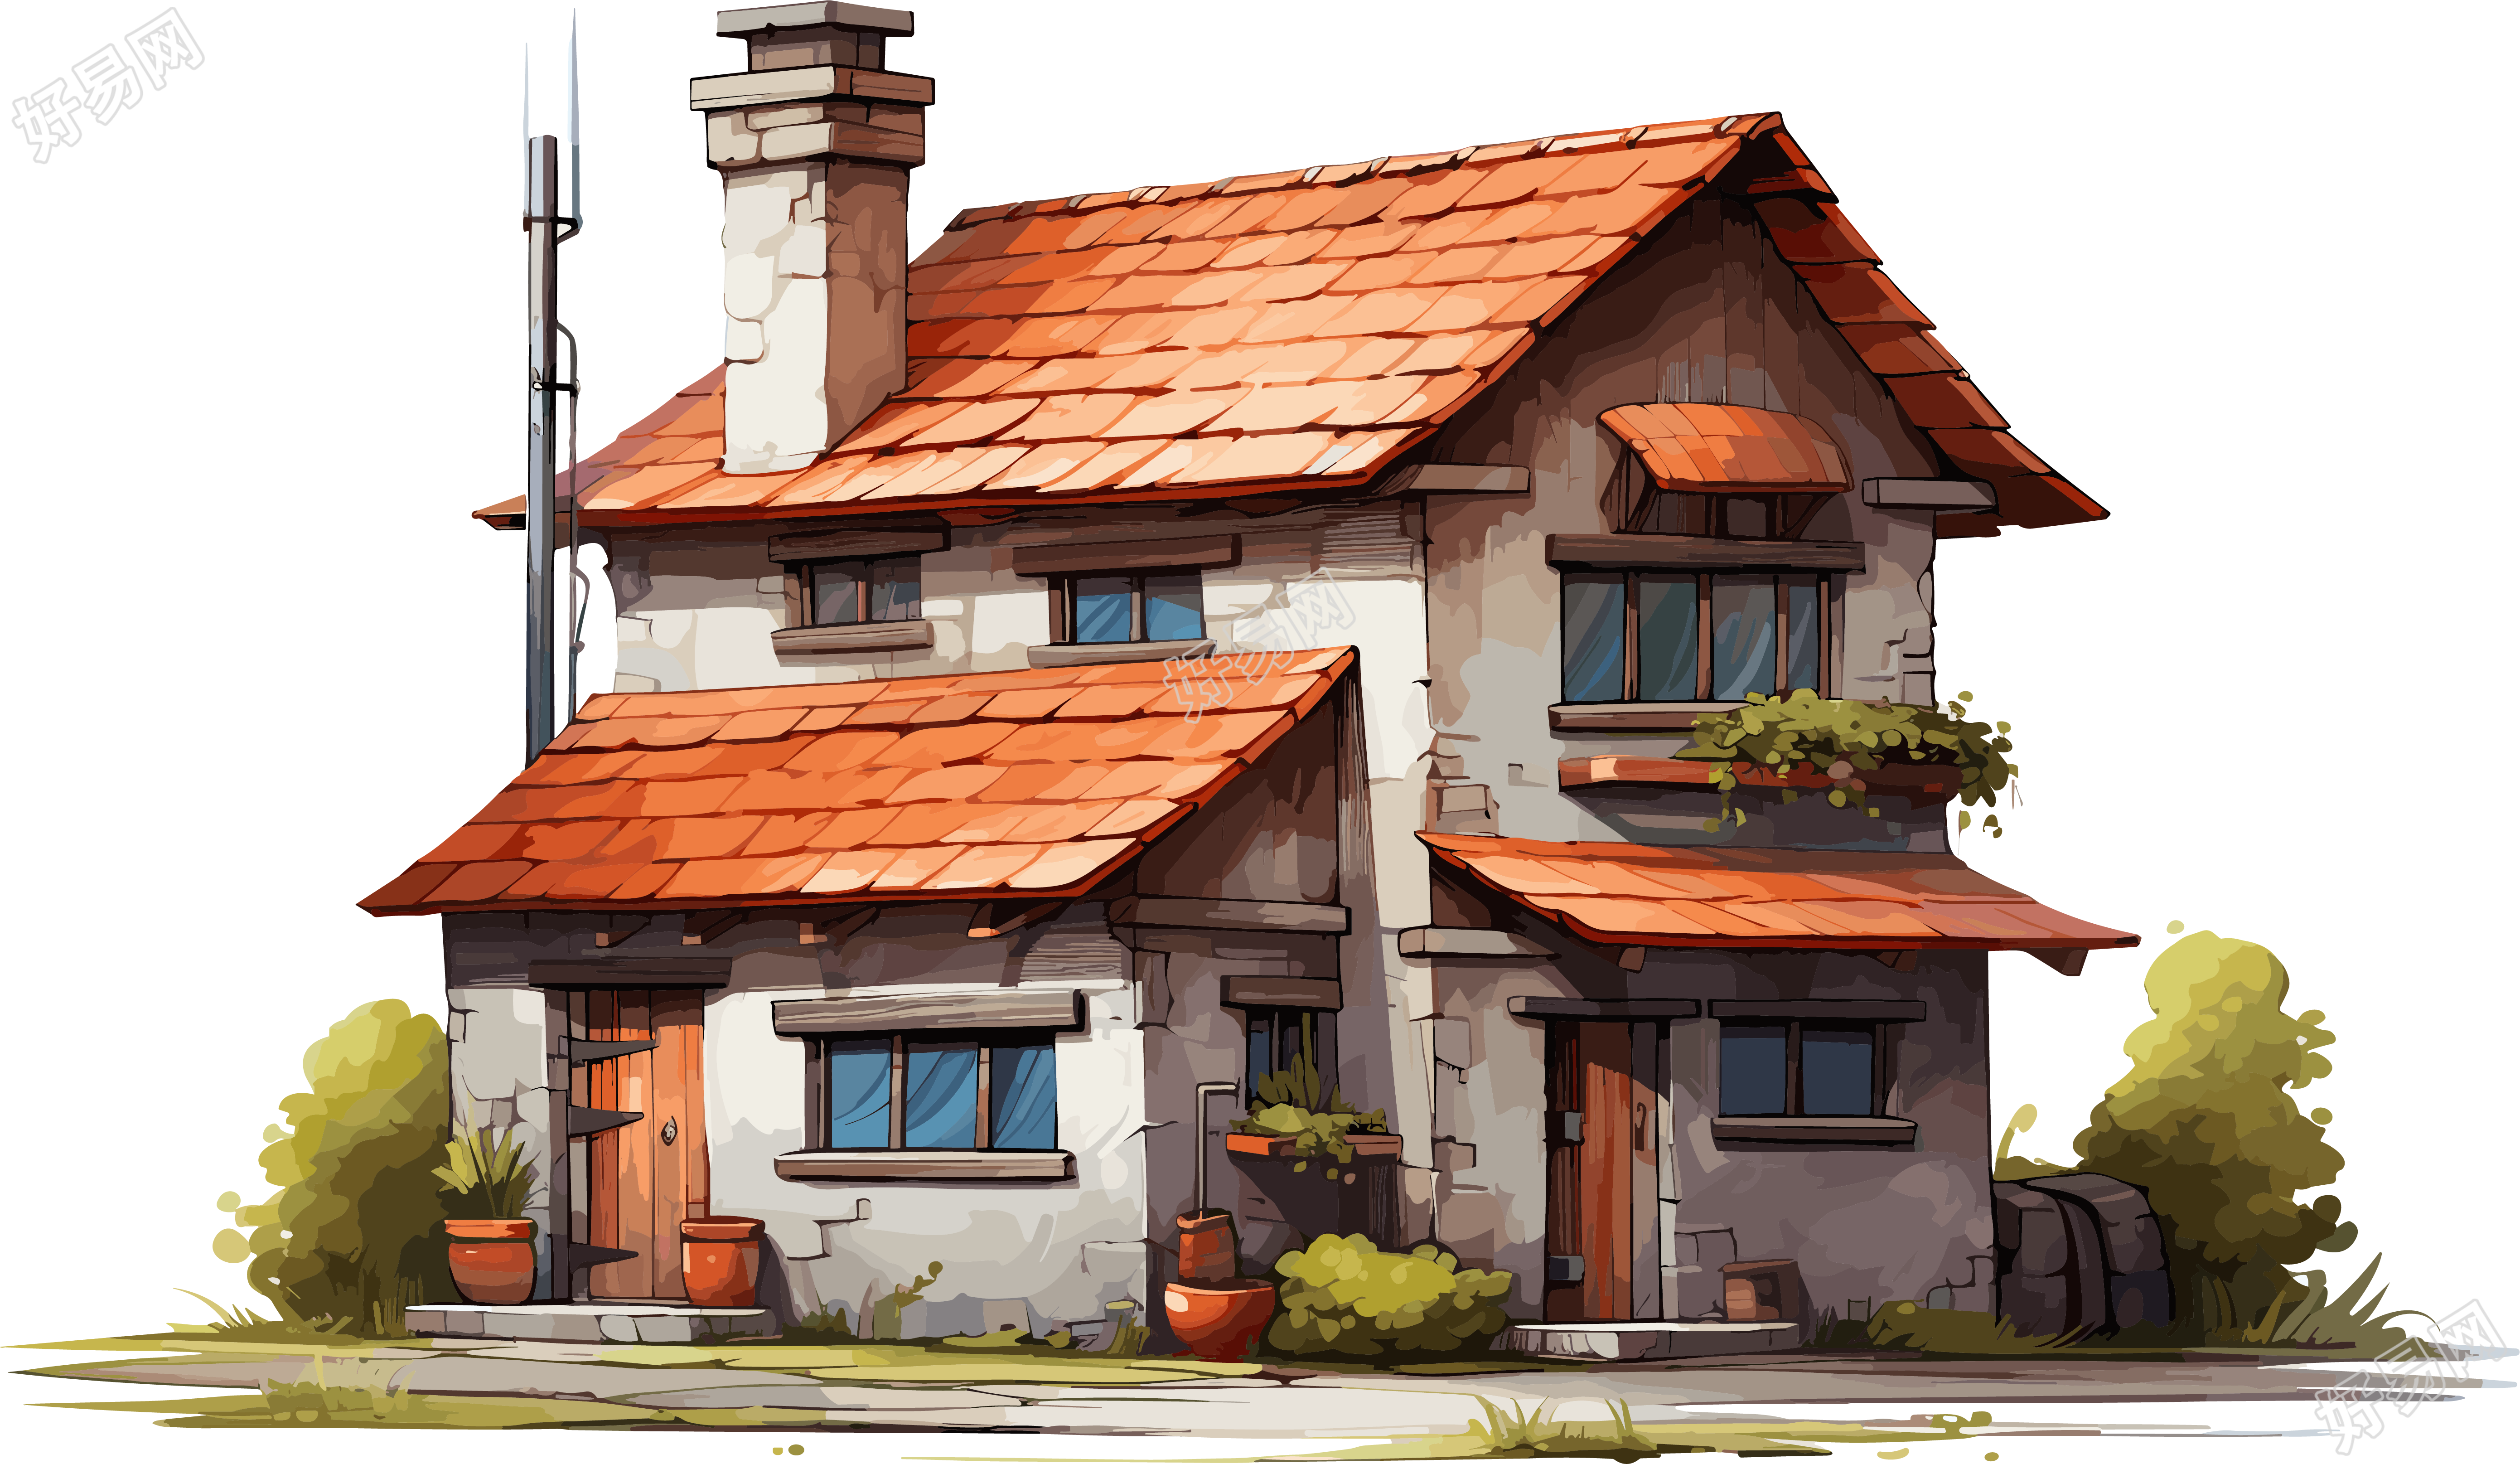 红屋顶与烟囱的卡通房子素材